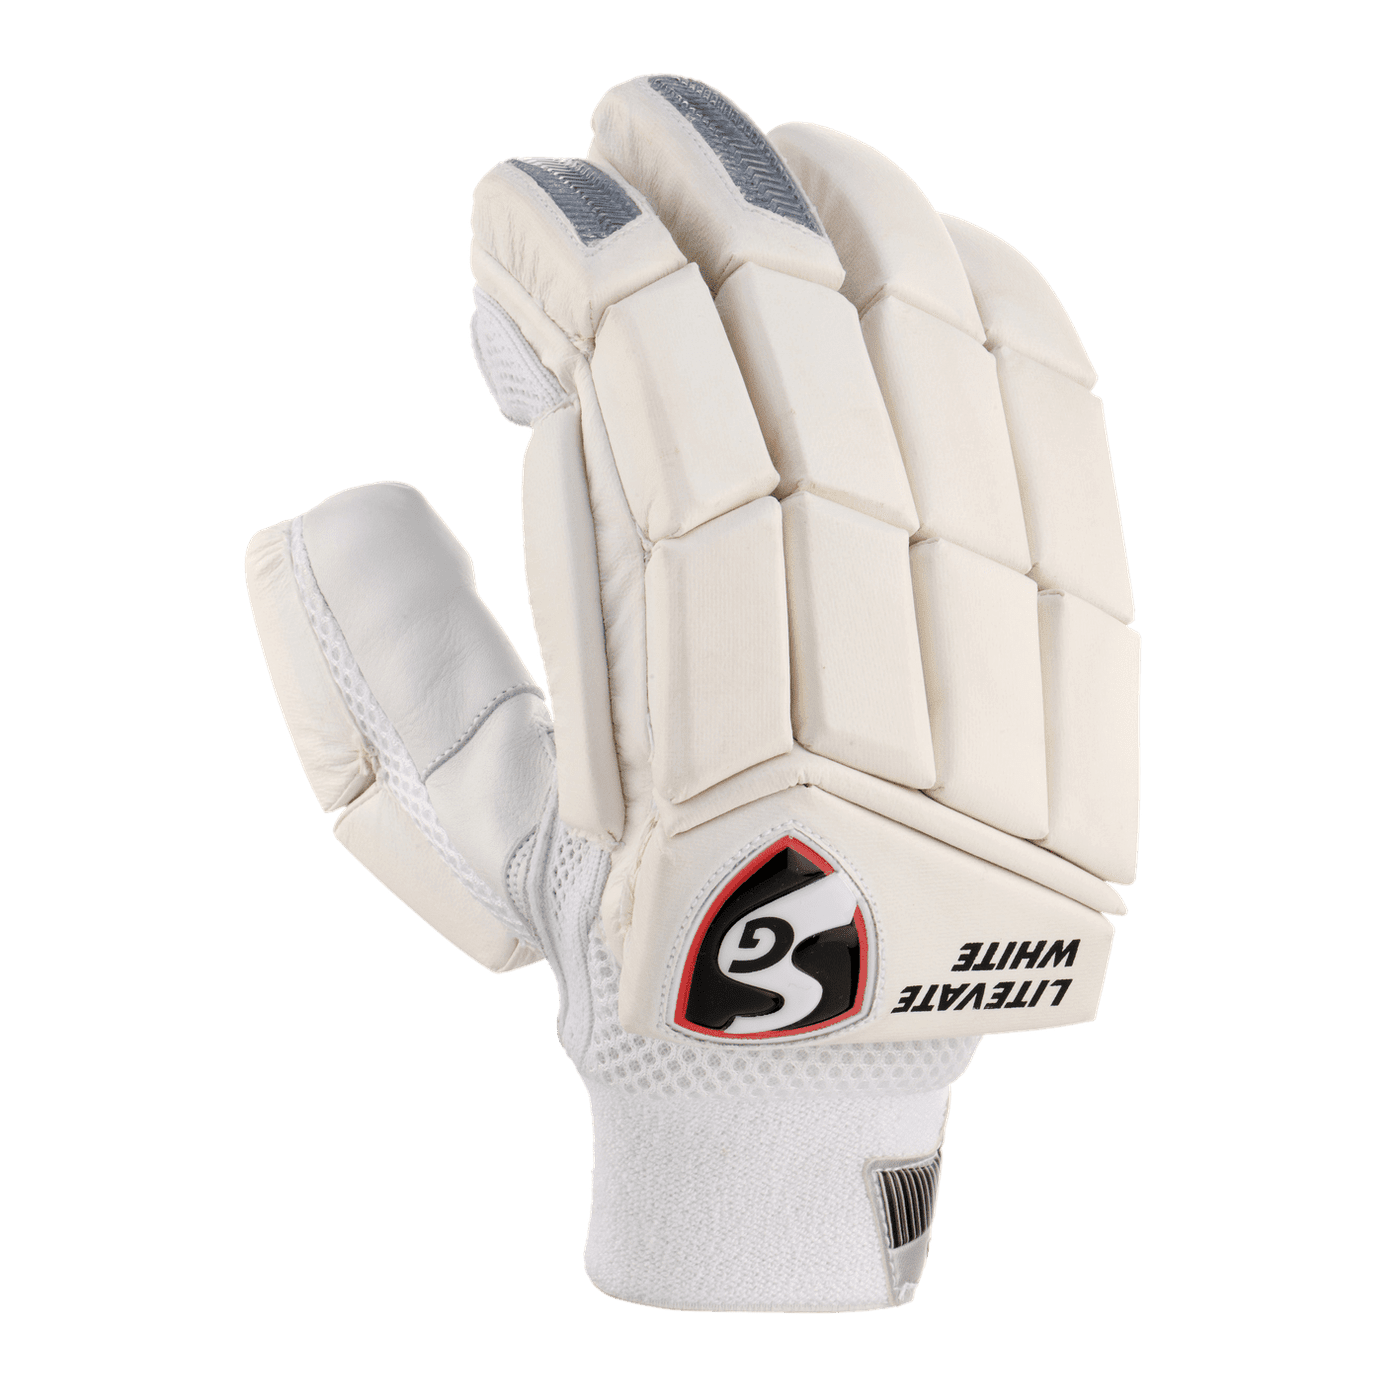 SG Gloves Youth RH SG Litevate White Junior Cricket Batting Gloves